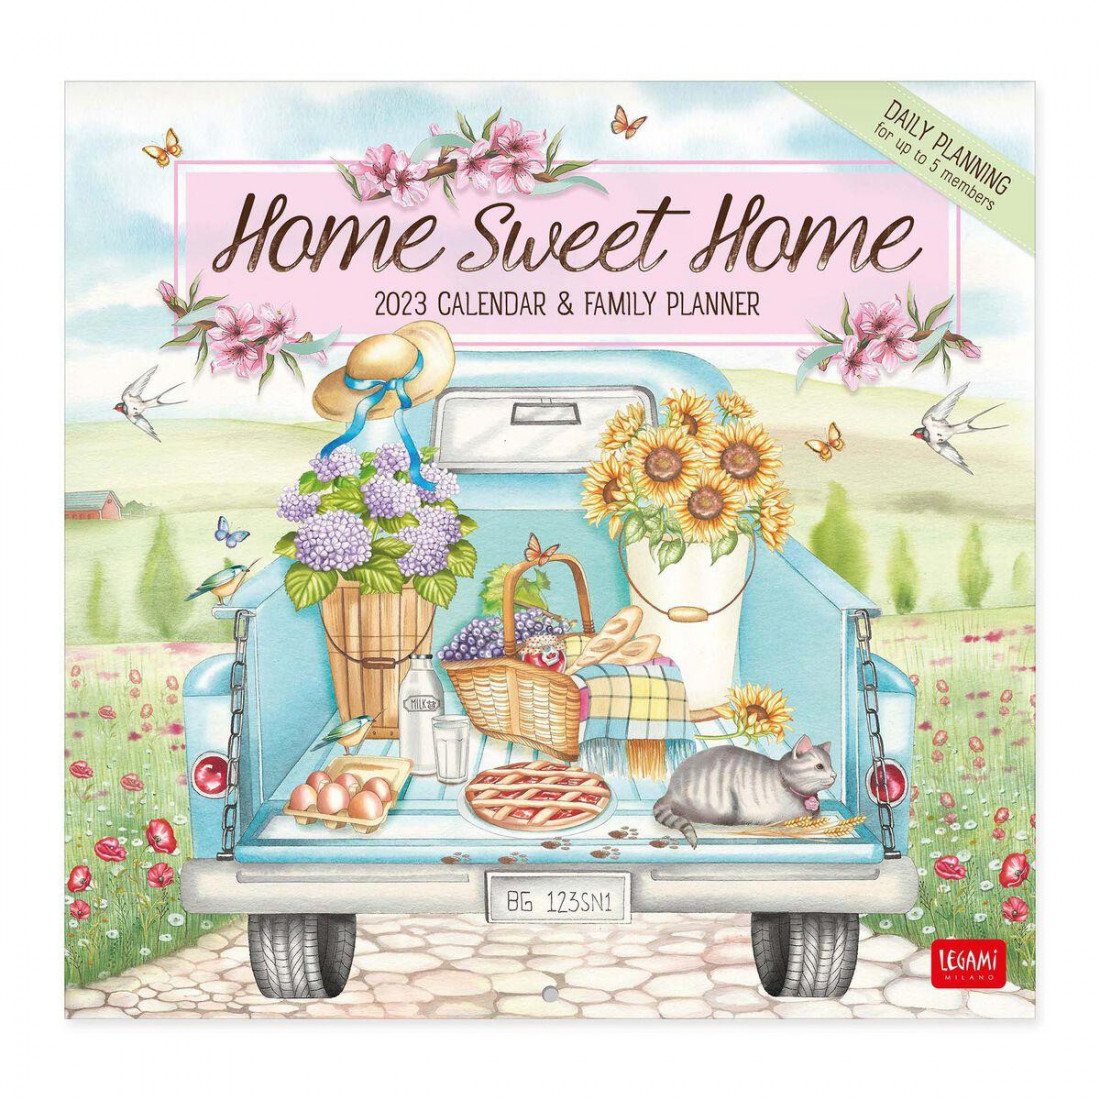 Legami Wall Calendar 2023 Home sweet Home 30 x 29 cm